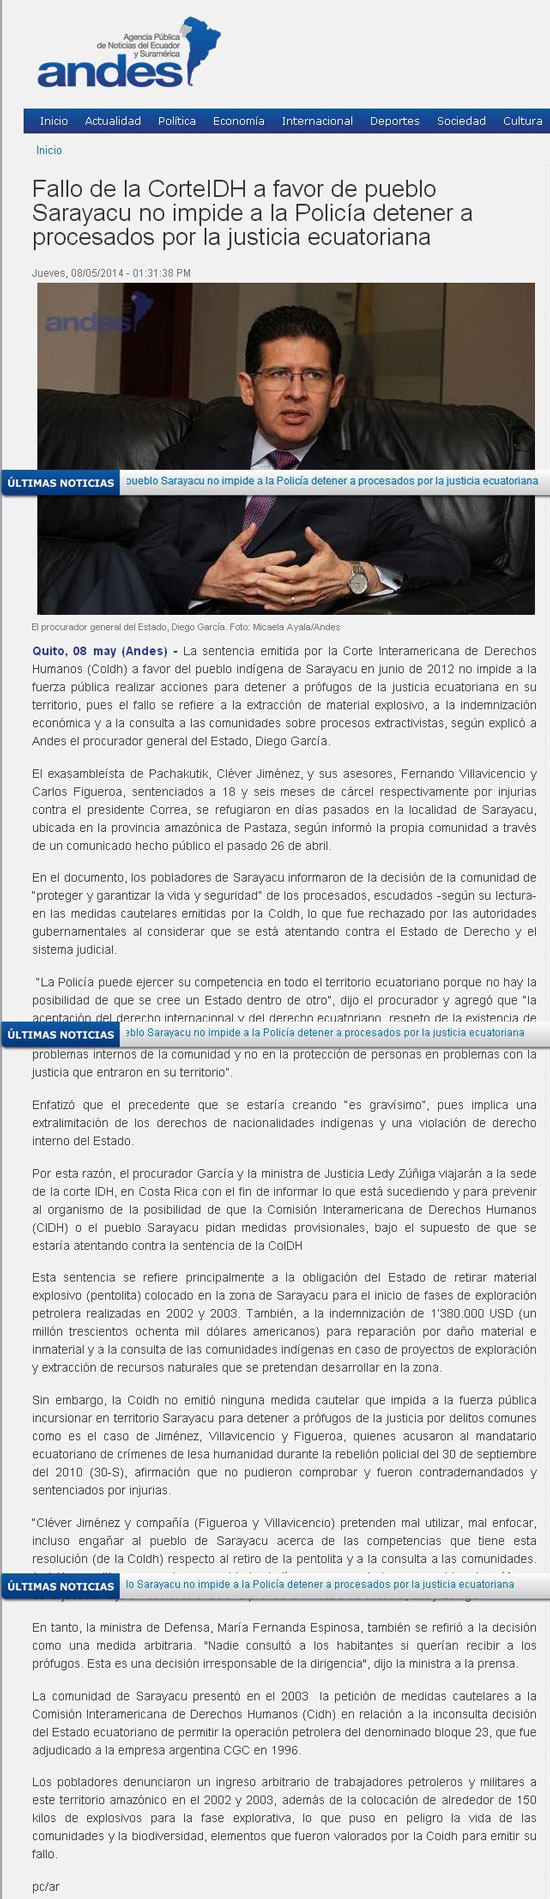 2014-05-08,-andes.info,-PGE;-Fallo-de-la-Corte-IDH-a-favor-del-pueblo-Sarayaku